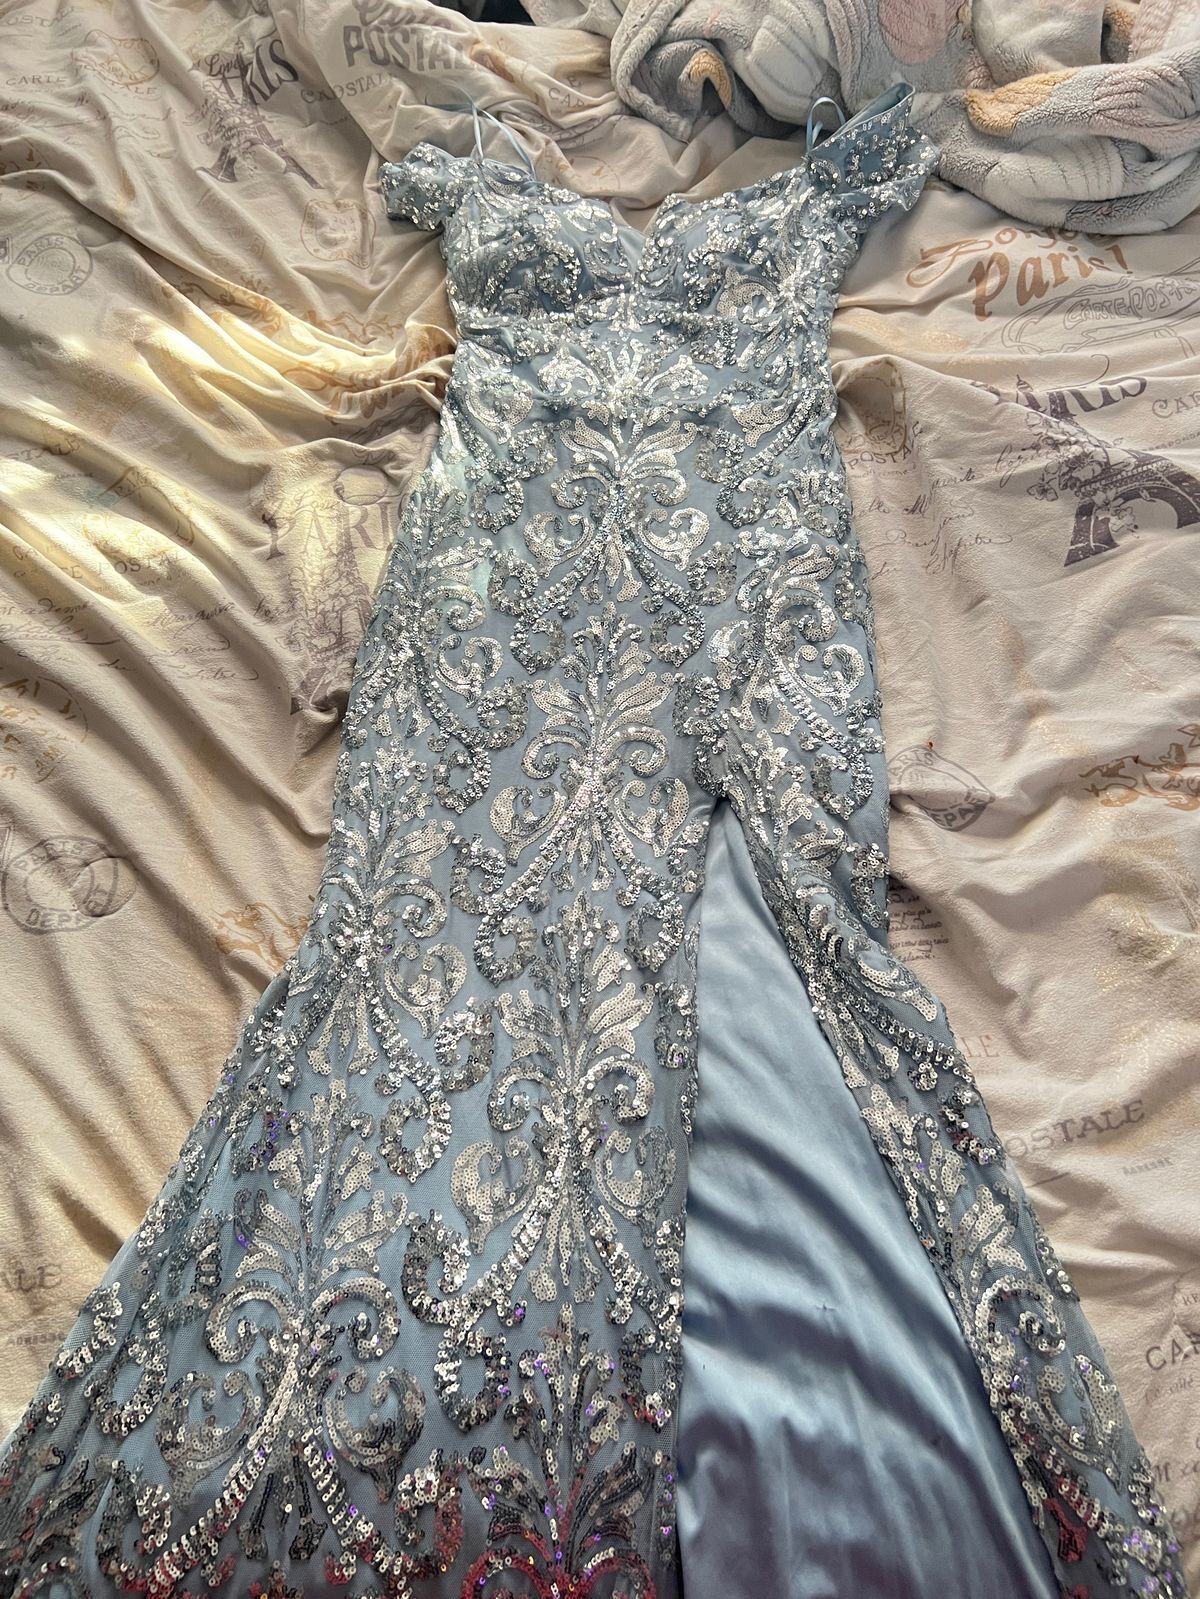 Size 4 Blue Side Slit Dress on Queenly